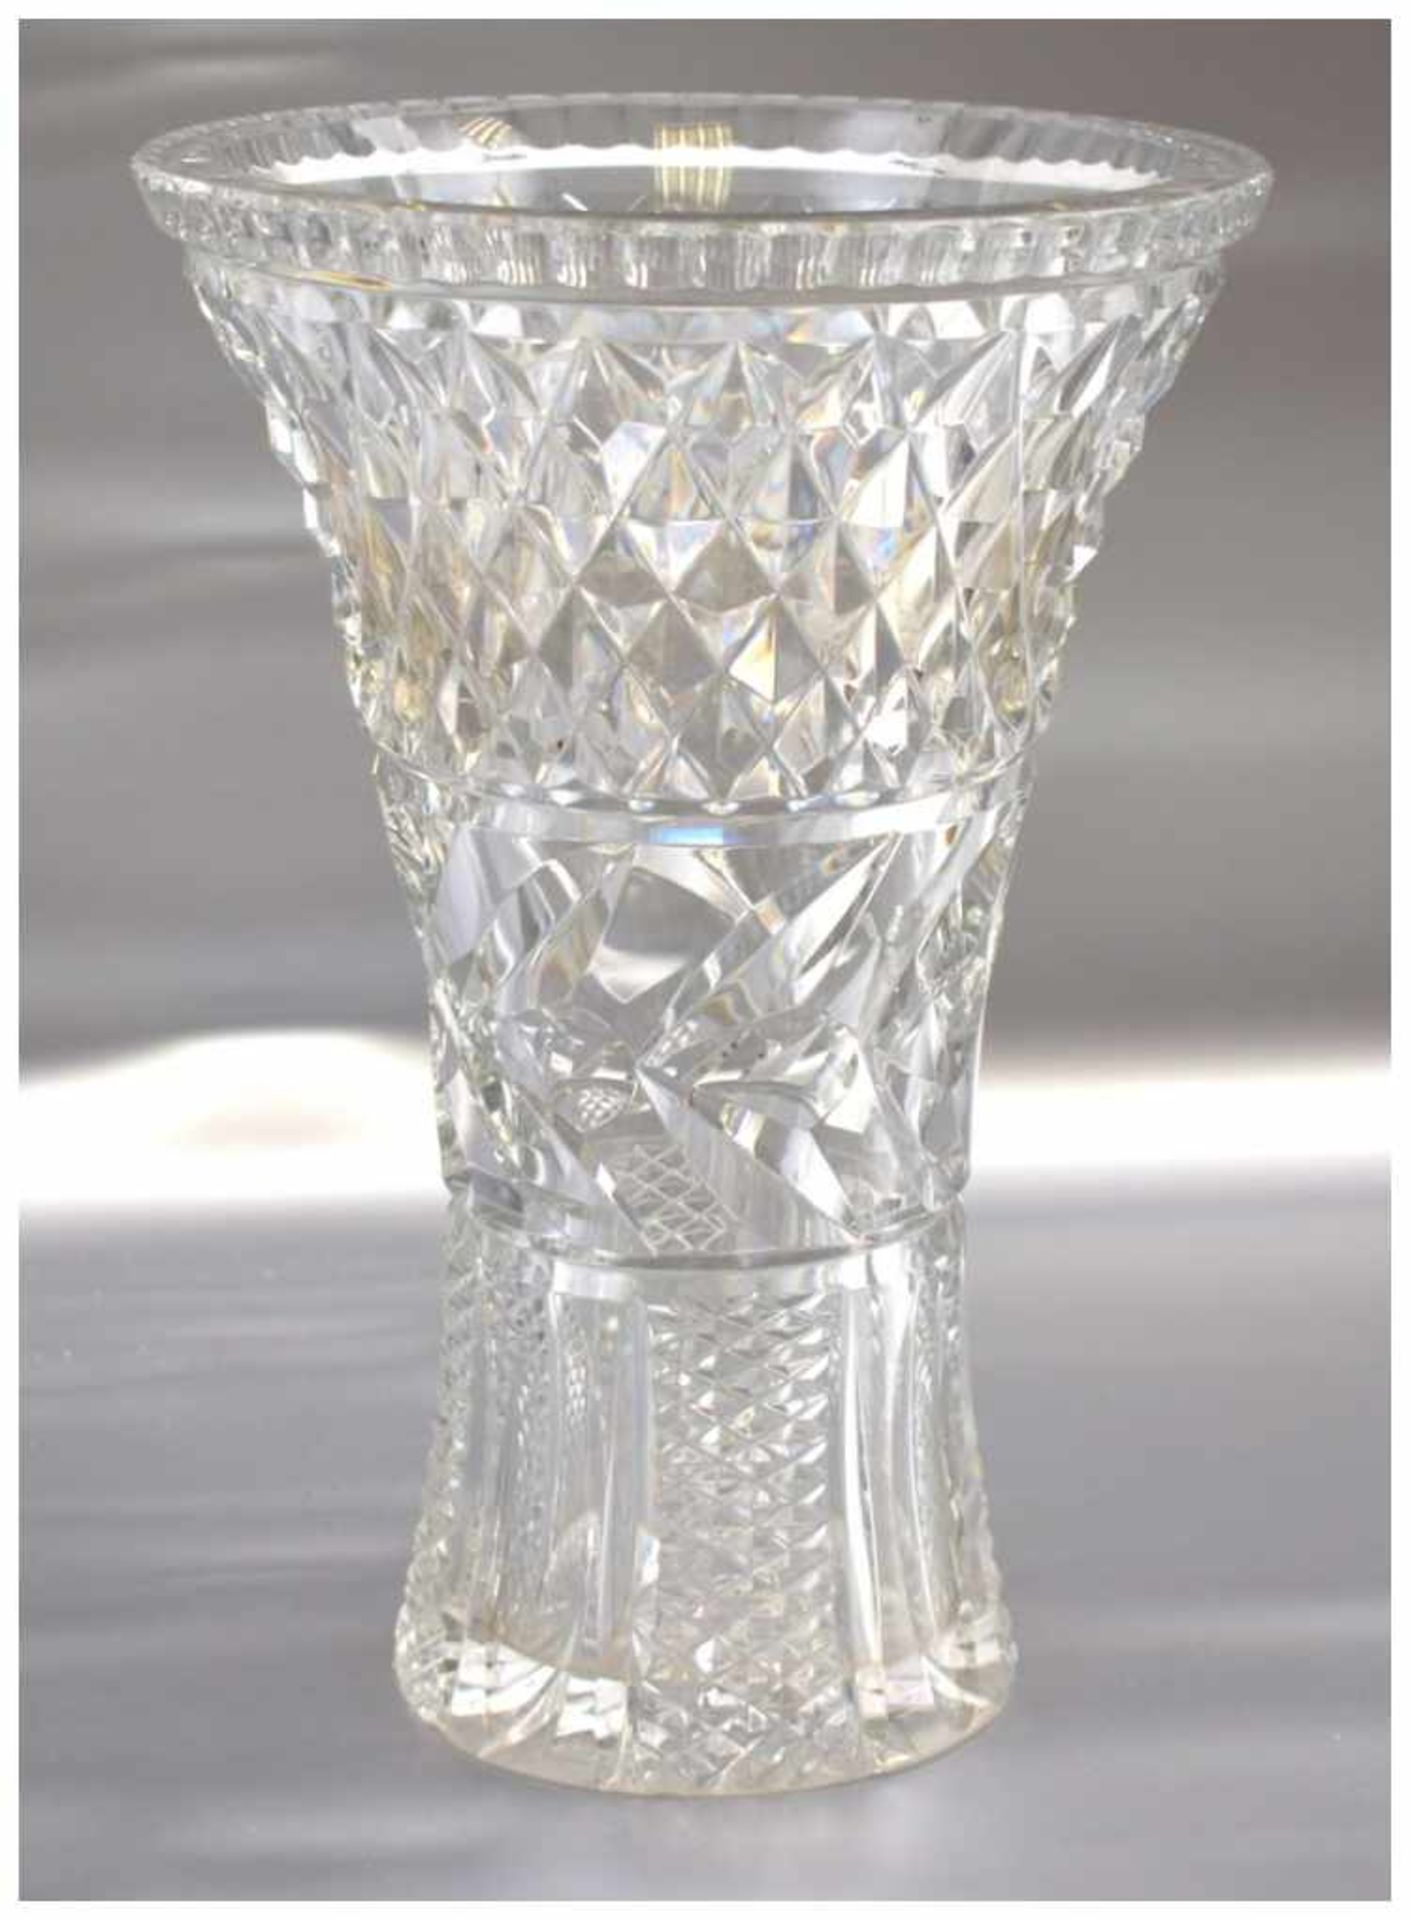 Vase farbl. Kristallglas, geschliffen verziert, in Trompetenform, H 25 cm